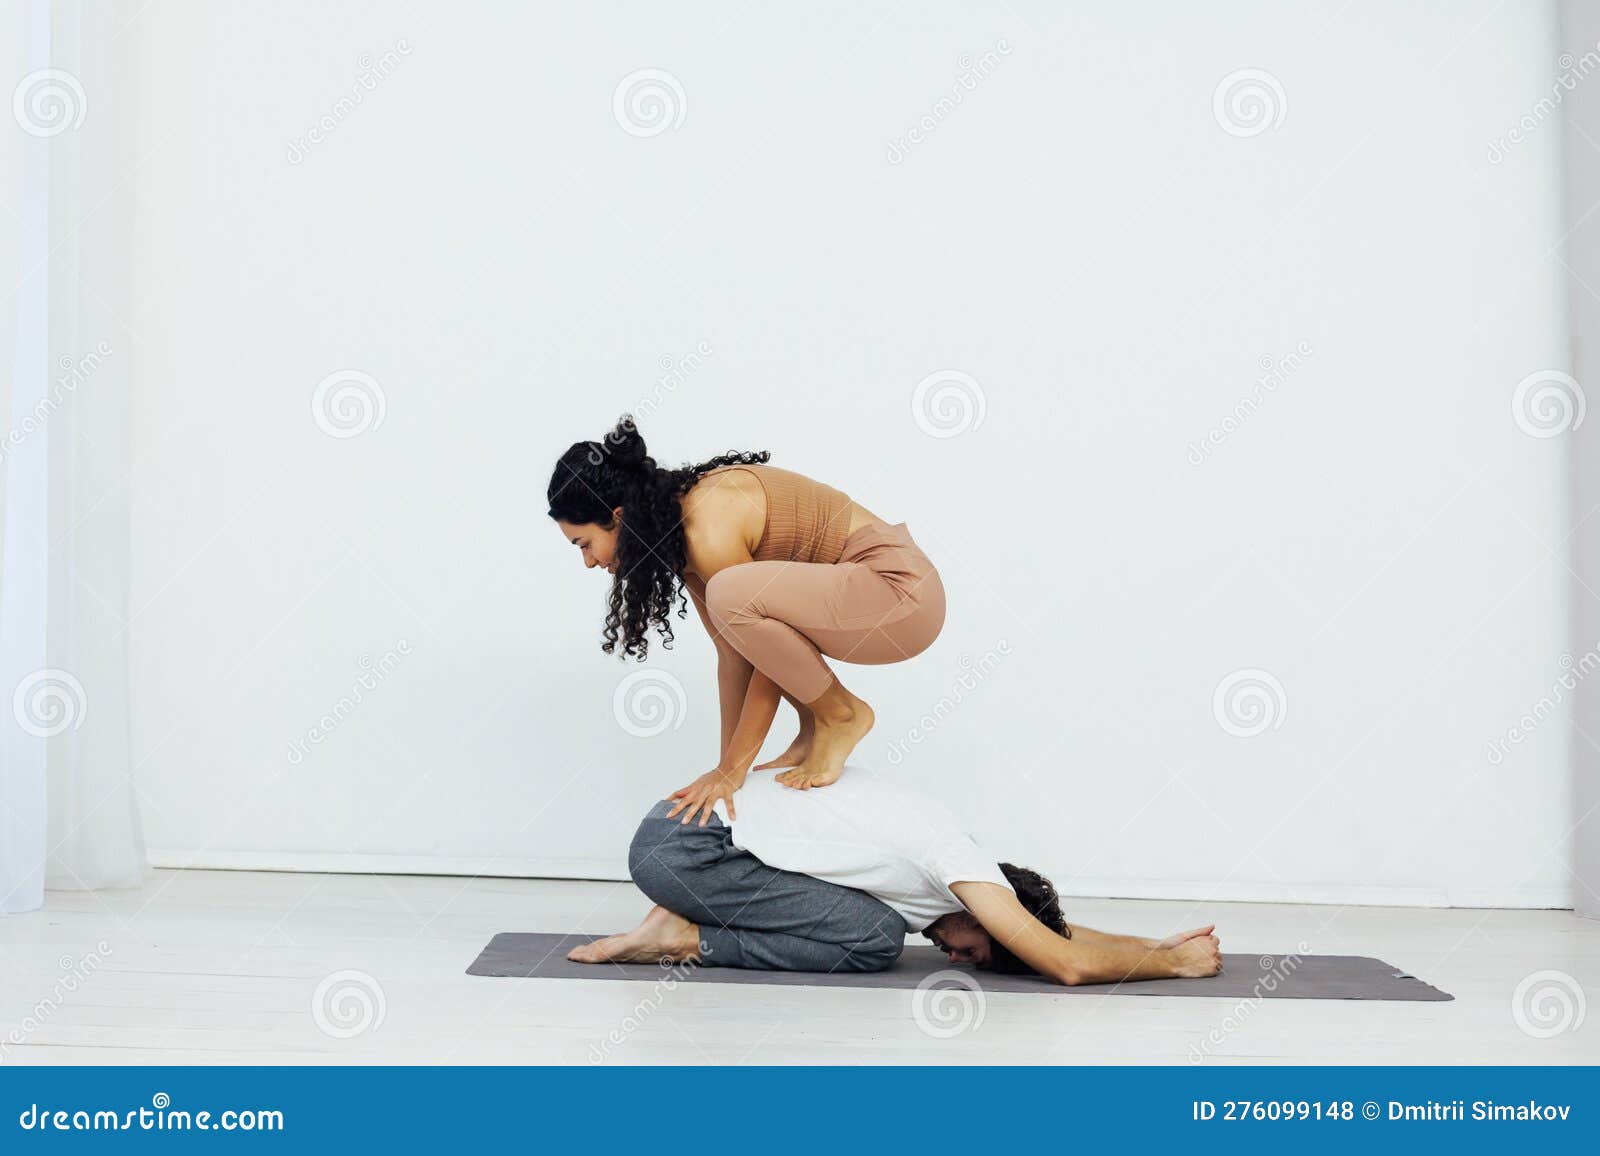 9 Yoga Stretches to Increase Flexibility | BODi